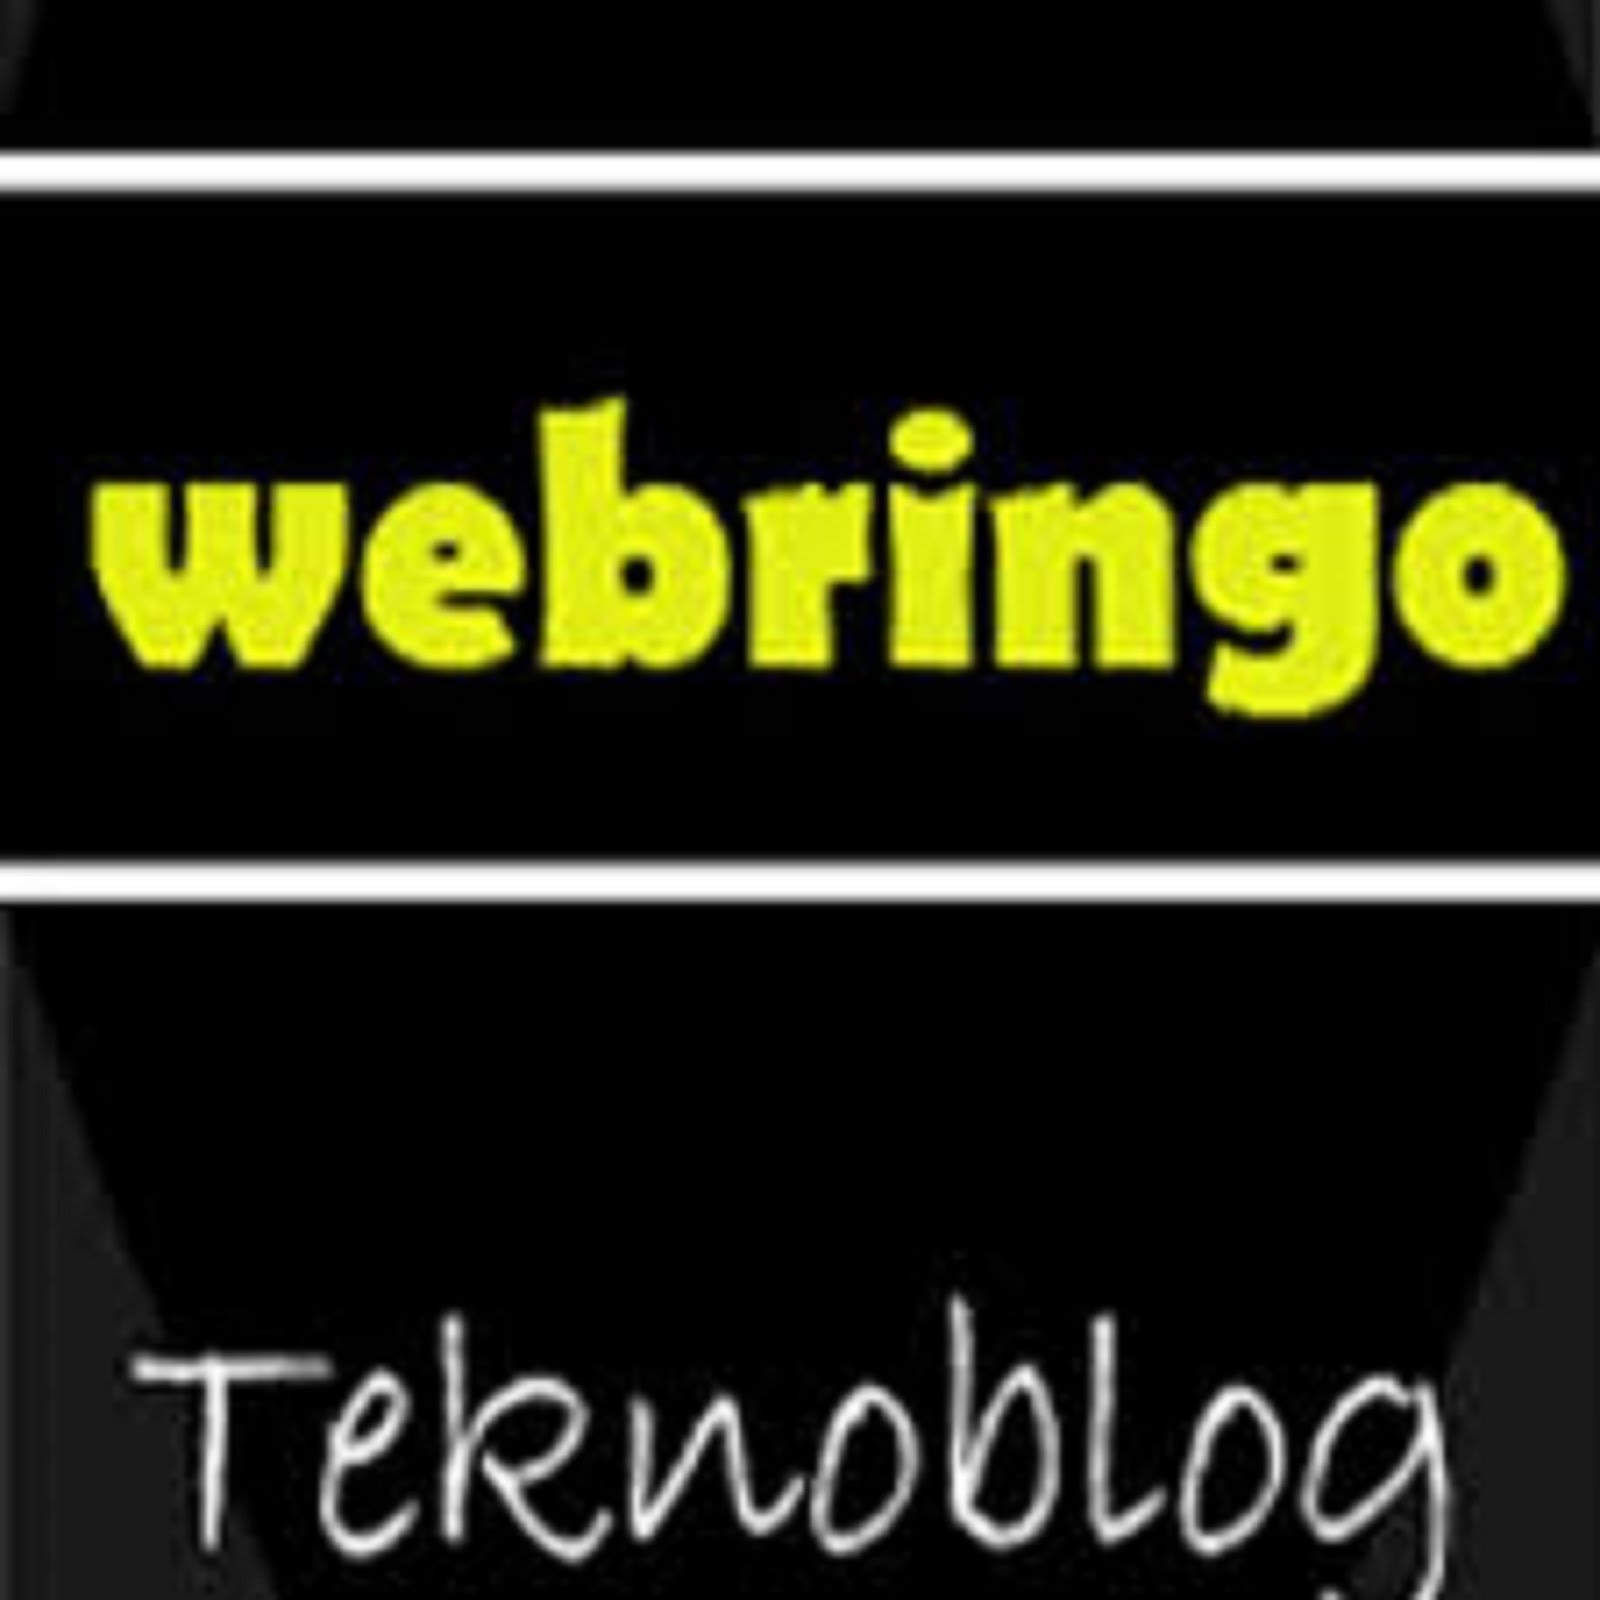 WEBRINGO.COM